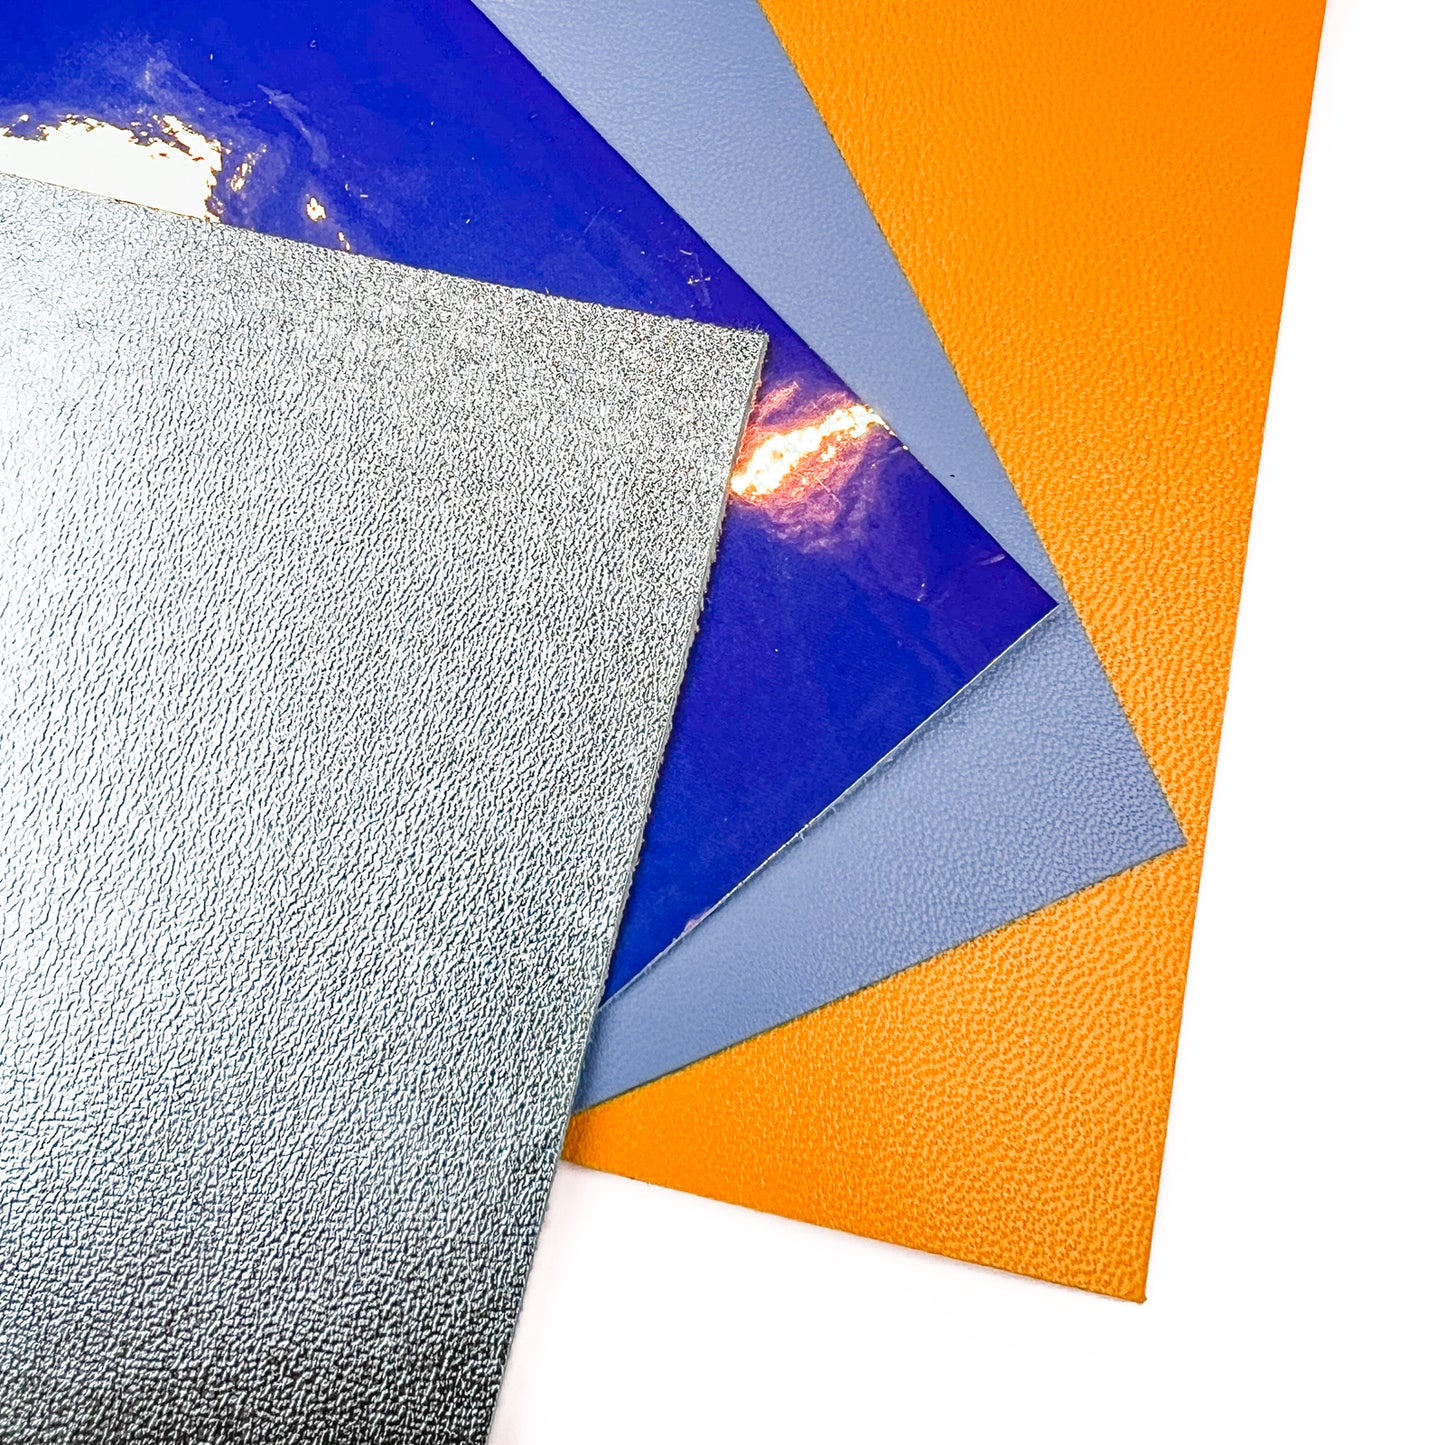 4 Metallic Lambskin 5x5 inch Pieces Set Bestseller 12x12 cm